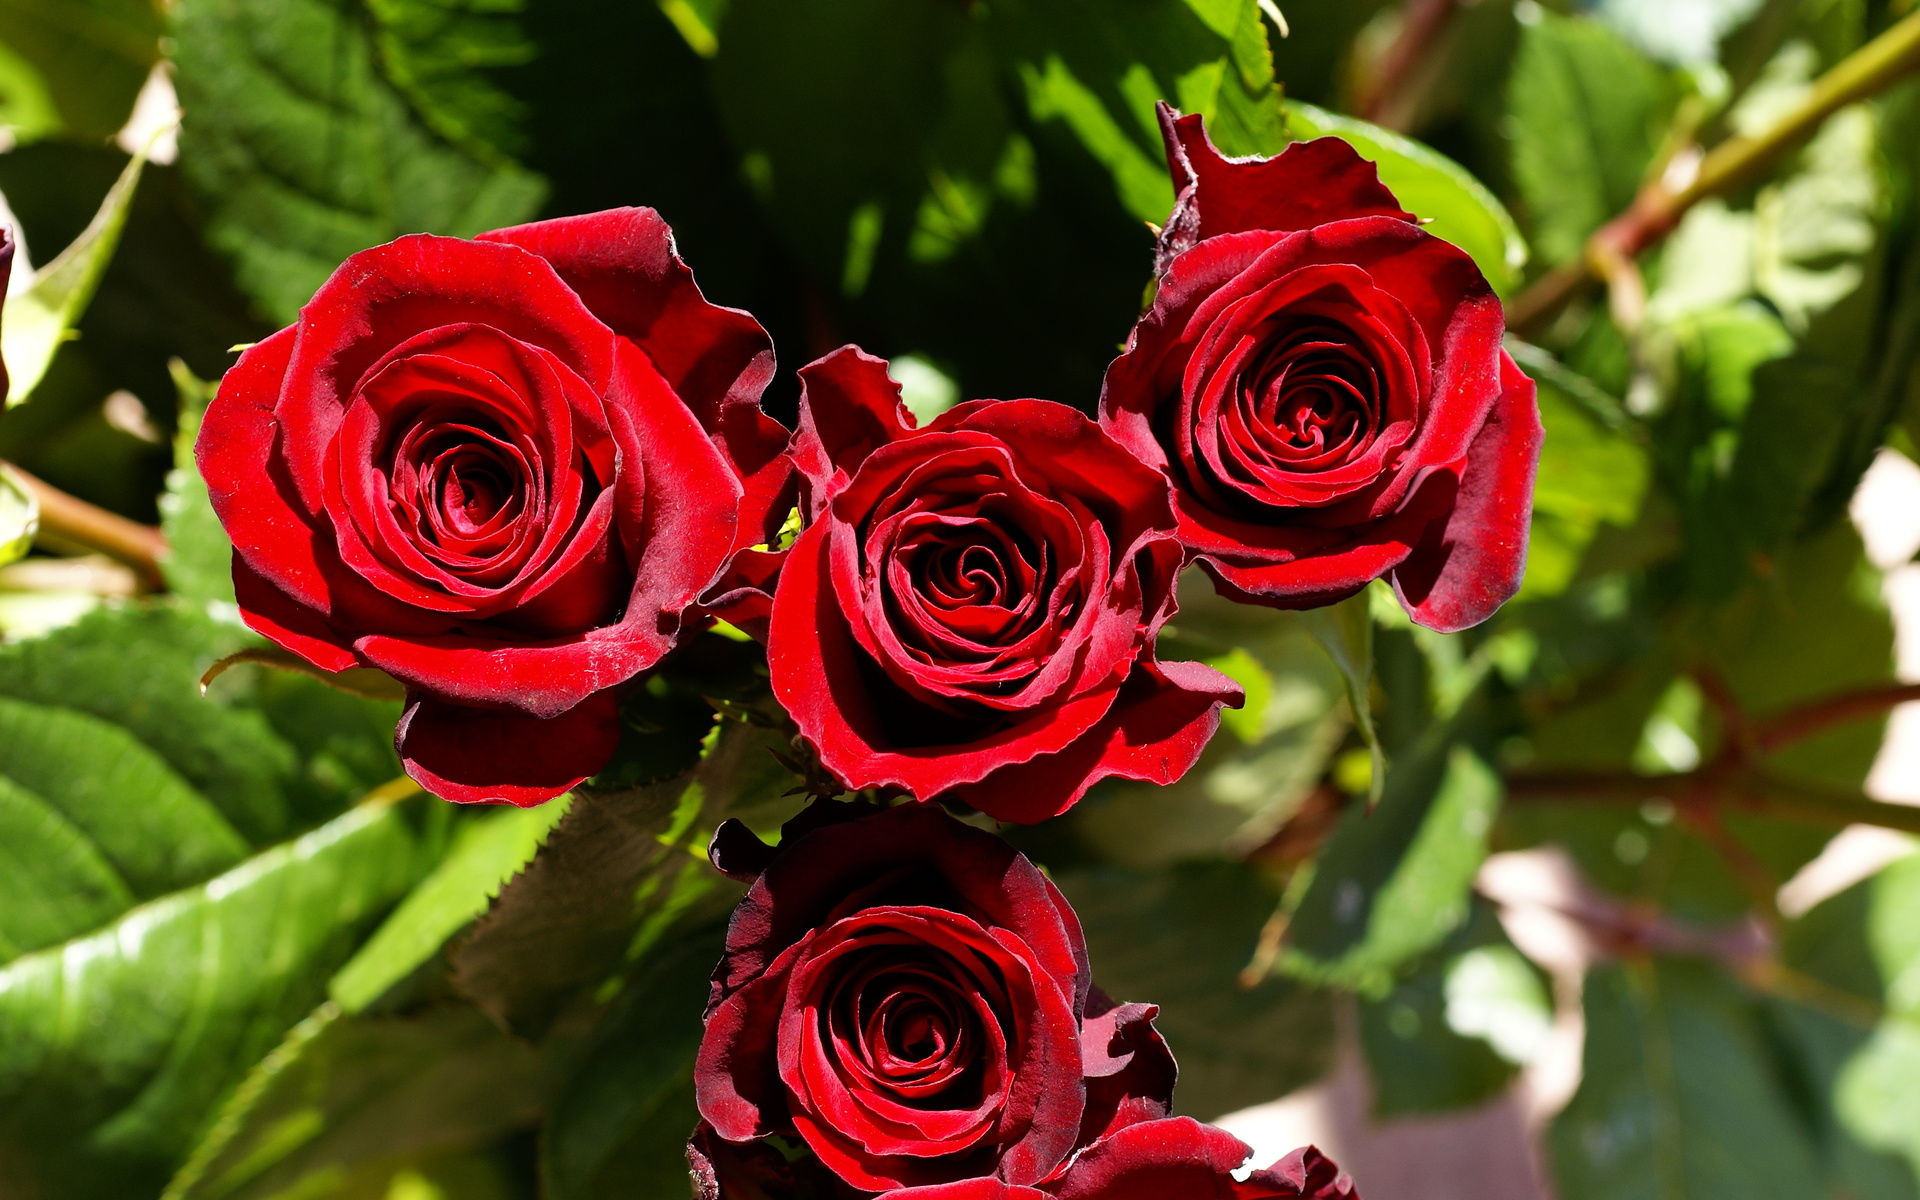 2541 9 صور اجمل الورود - الورود الاروع بالصور الاجمل دجانة جوهر